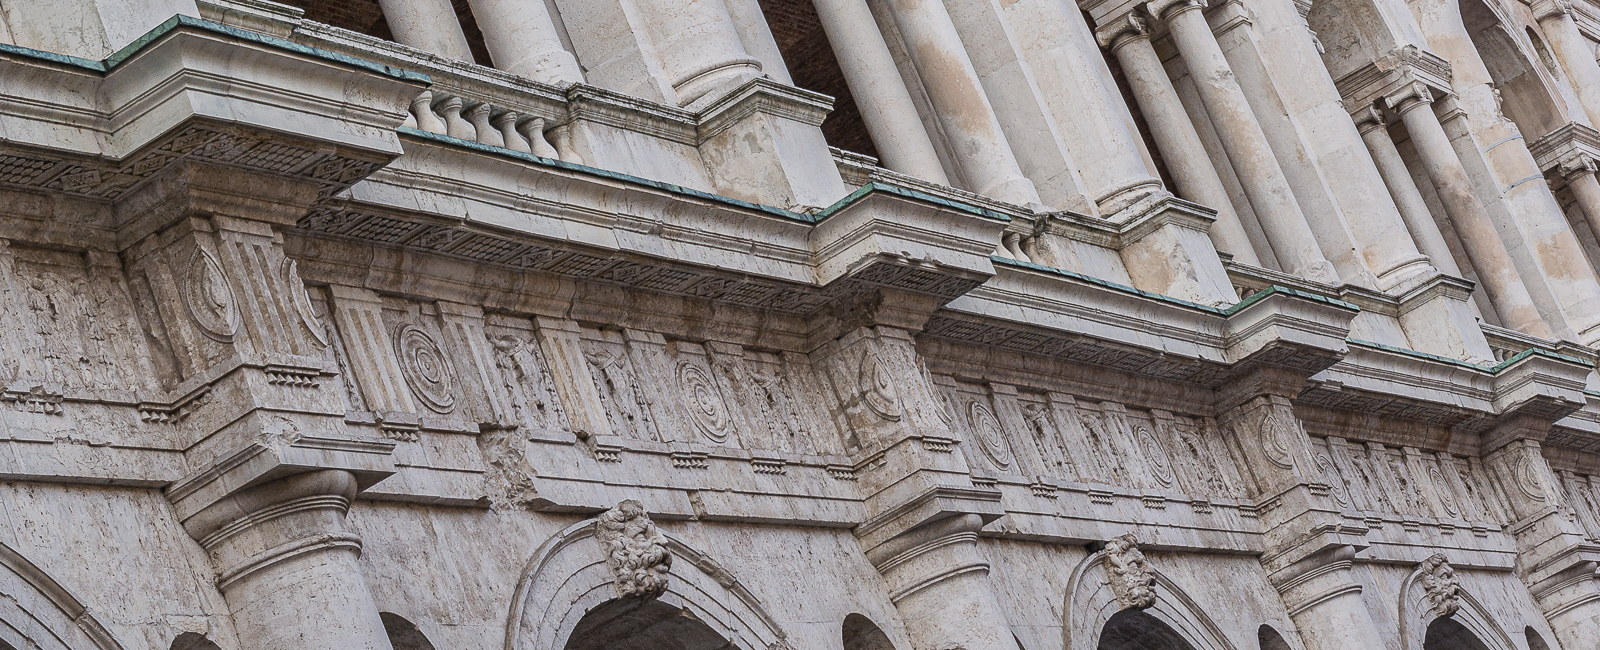 Basilica Palladiana: Detail der weißen Marmor-Arkaden, die als Palladio-Motif weltberühmt wurden.